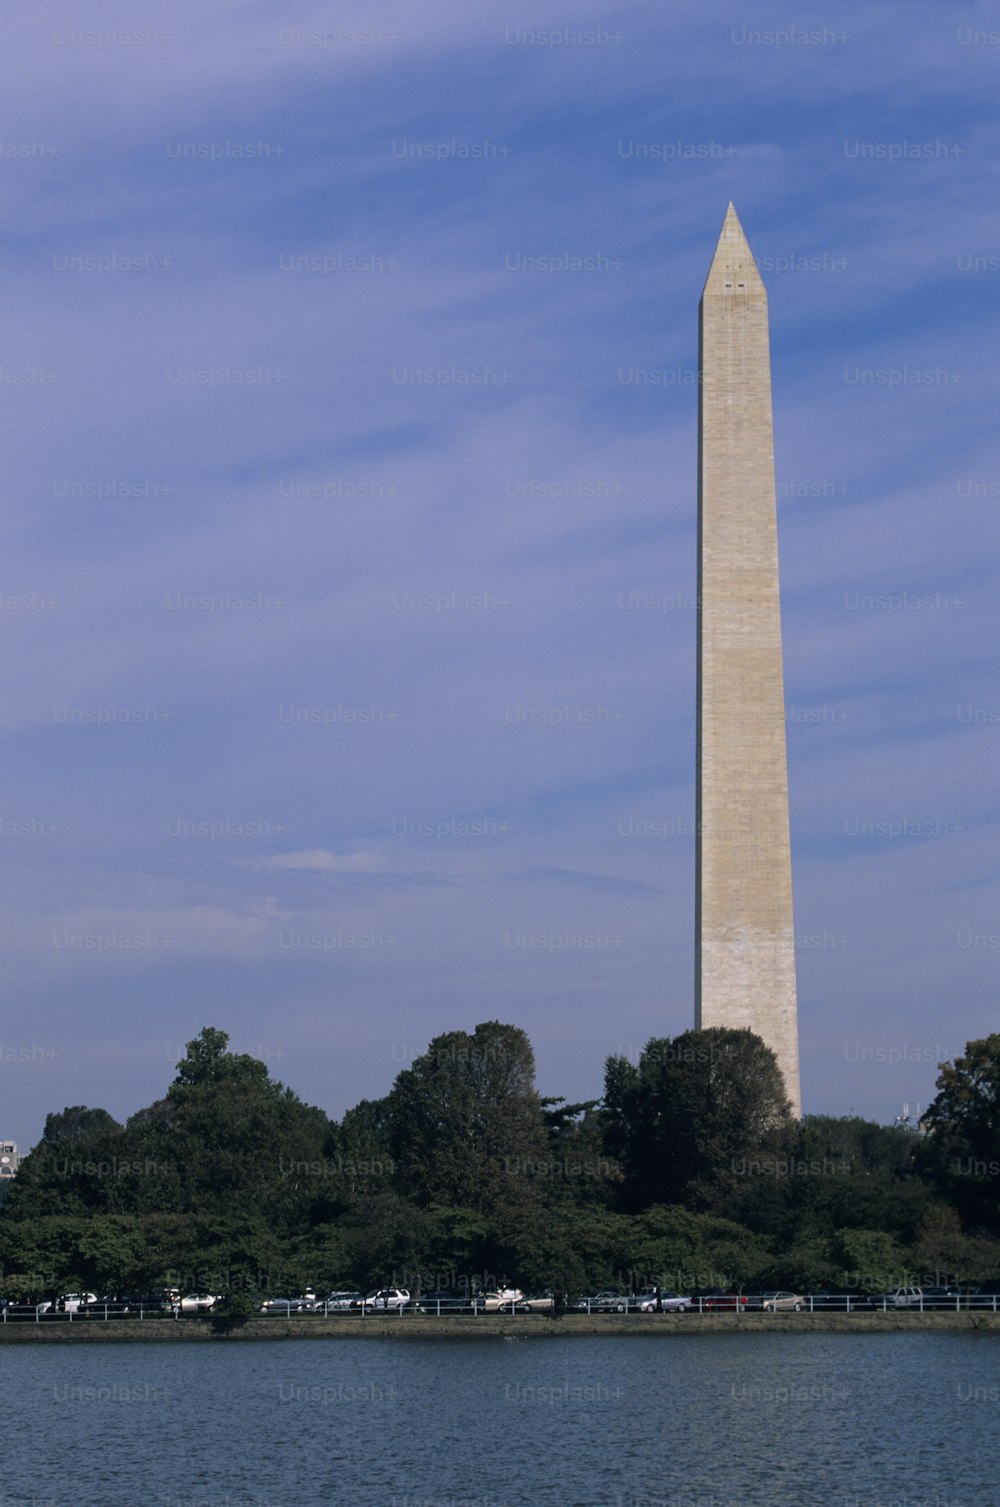 Il monumento a Washington a Washington, DC è visto dall'altra parte dell'acqua